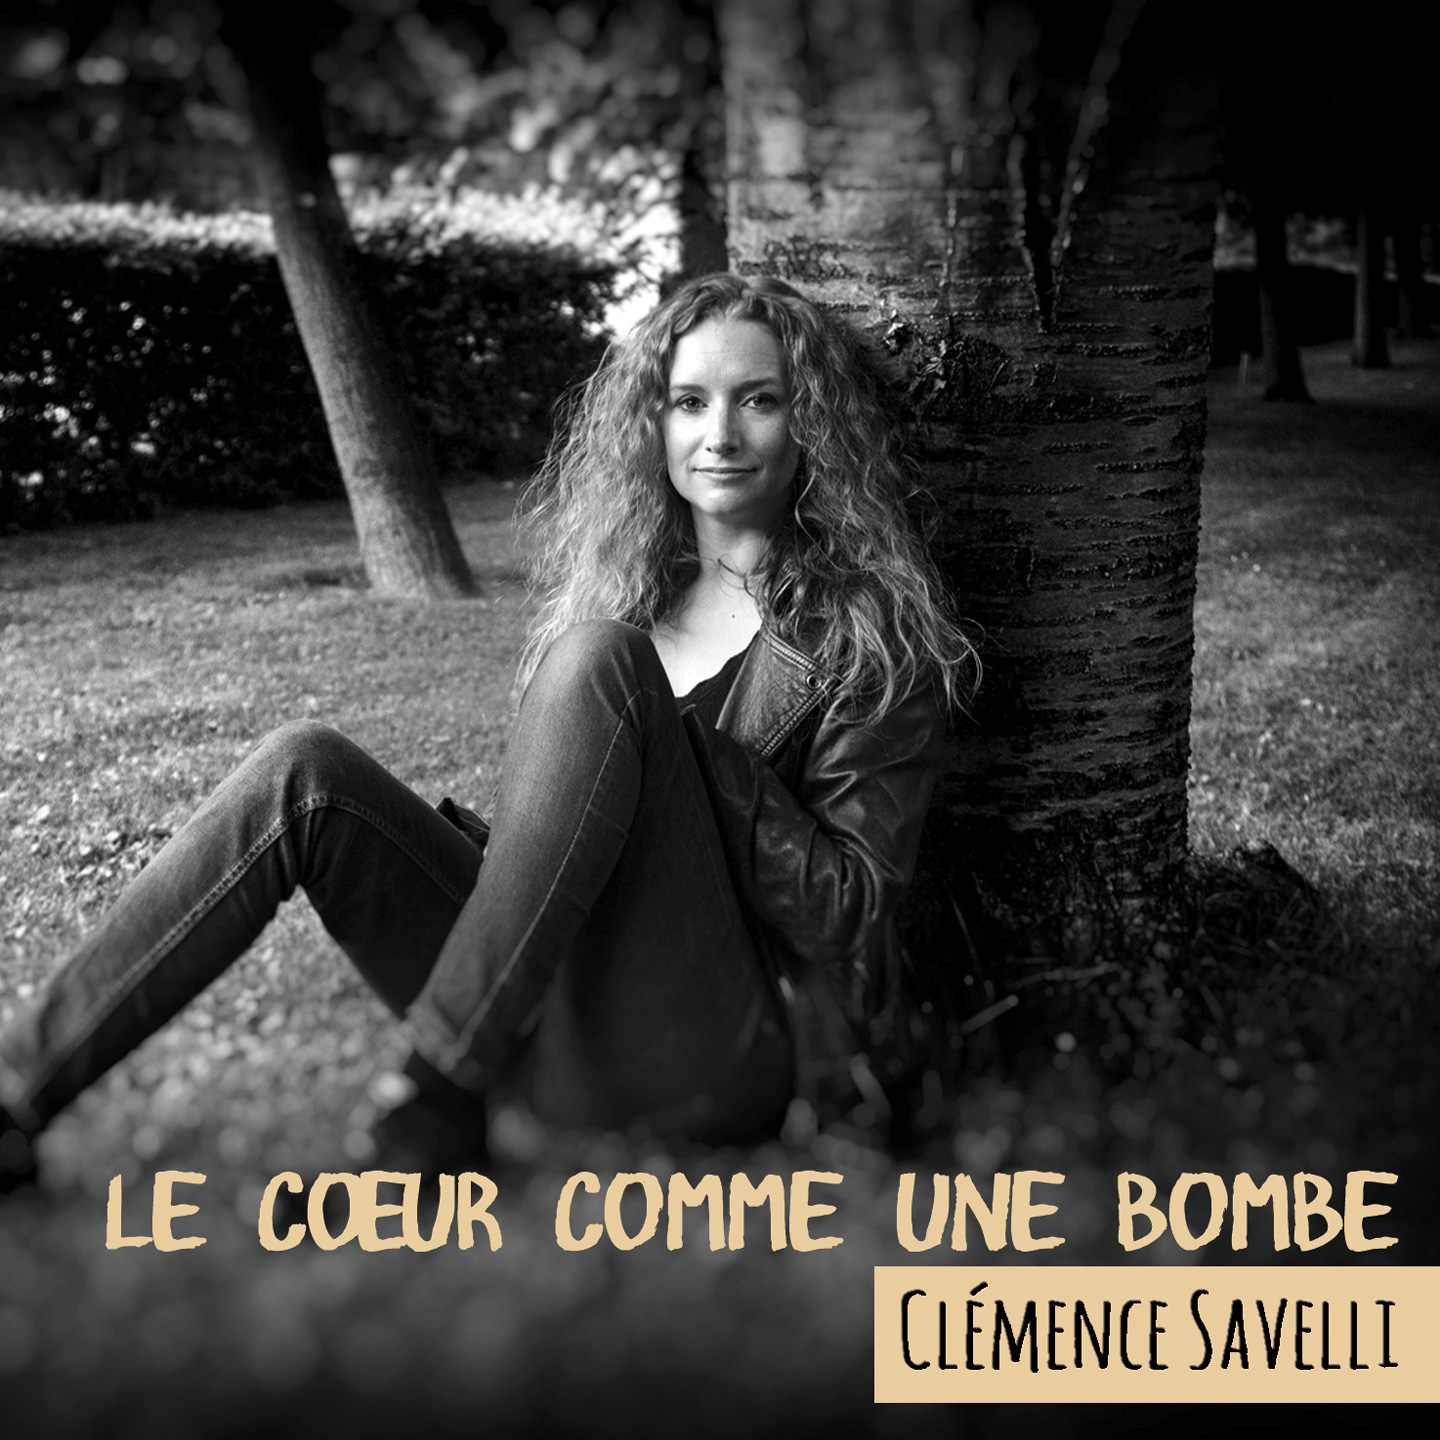 2016 Clemence Savelli - Le coeur comme une bombe - Accordéon, bandonéon, Arrangements